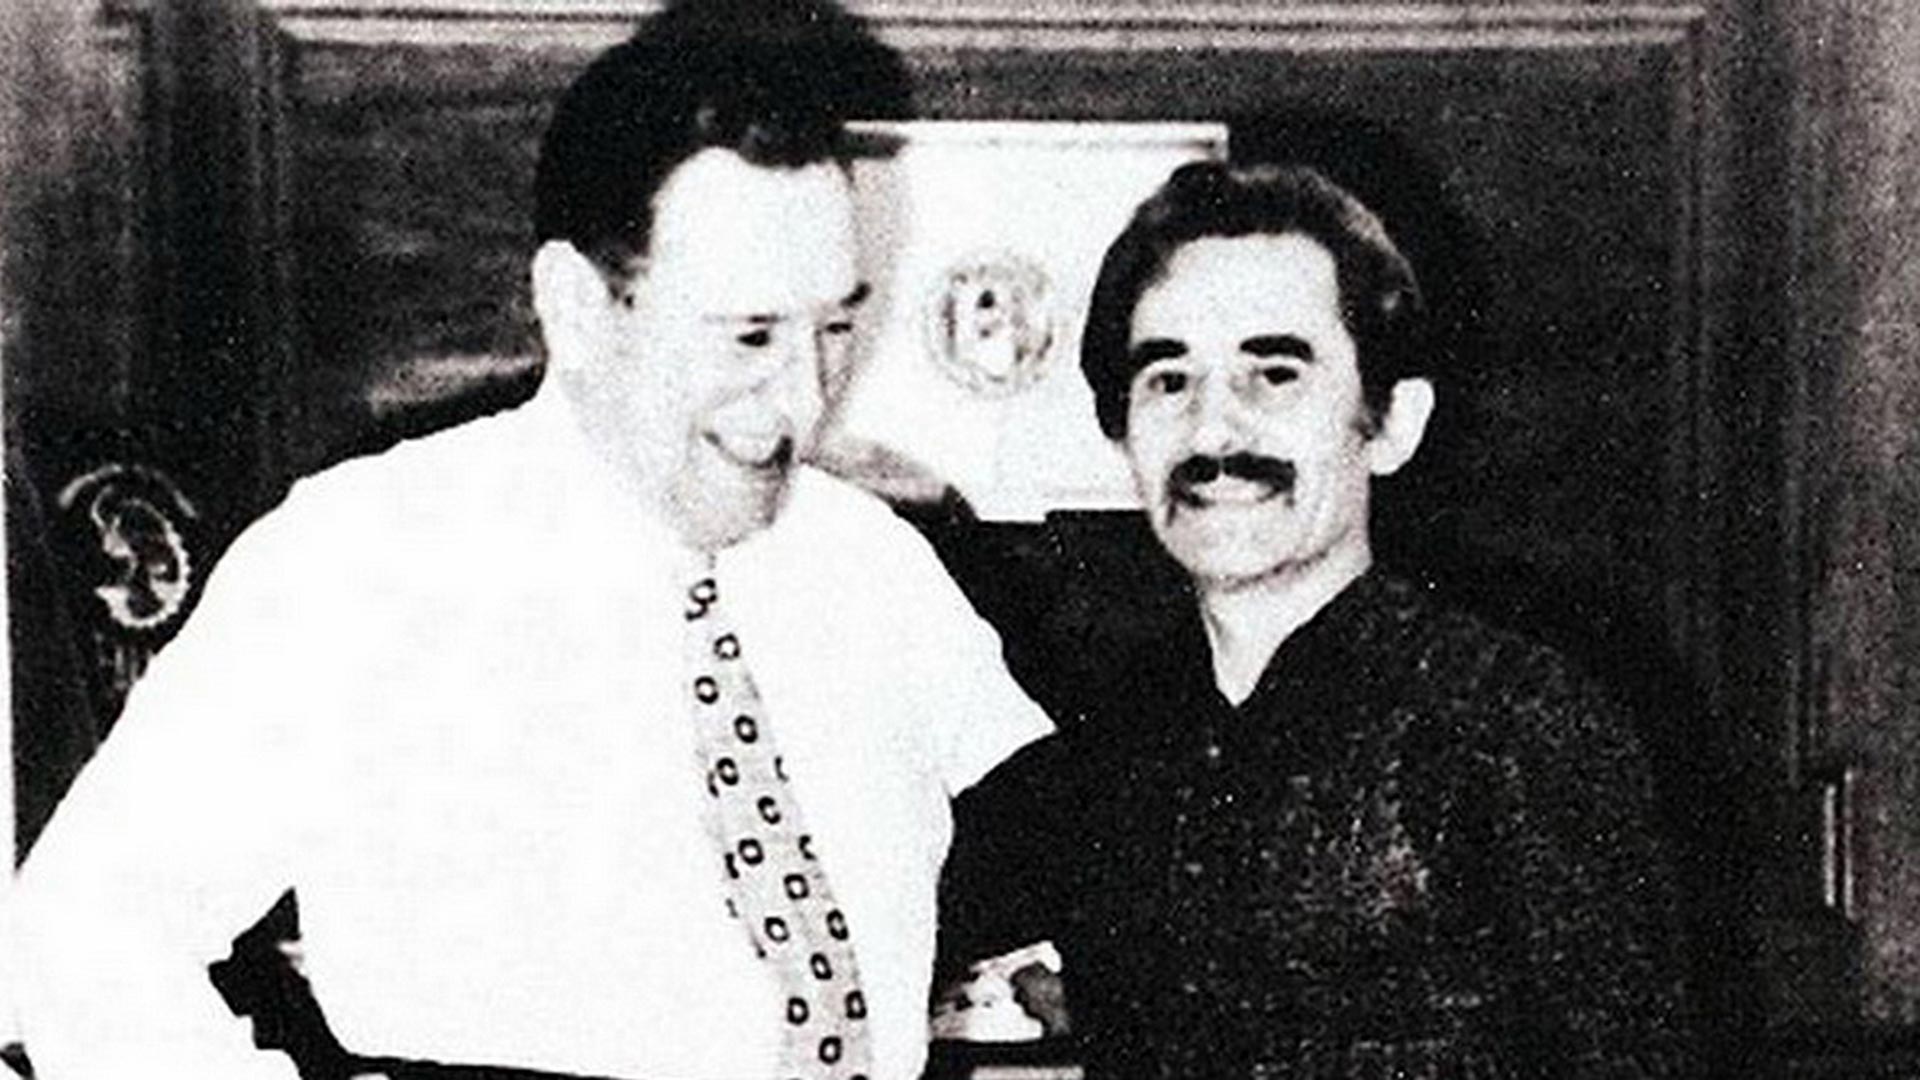 El asesinato de Rucci por Montoneros y la reacción de Perón: “Arrancarle la camiseta peronista” a los marxistas